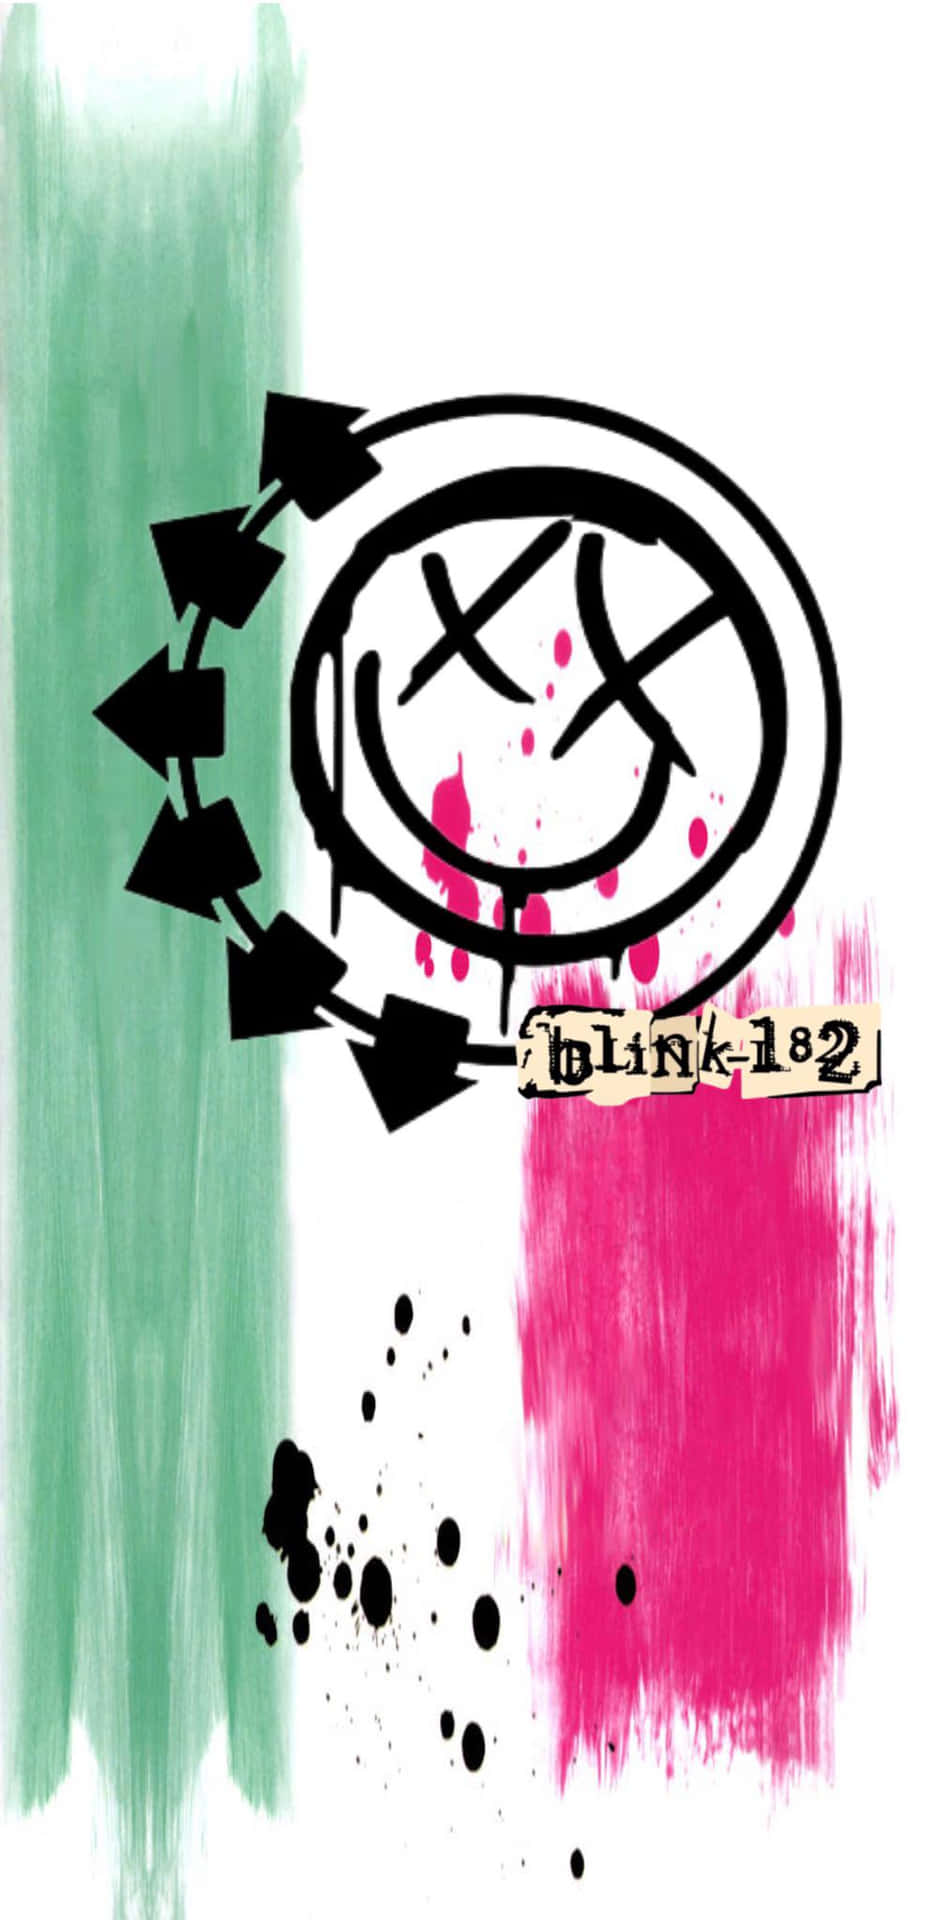 Blink182 Smiley Logo Artwork Wallpaper